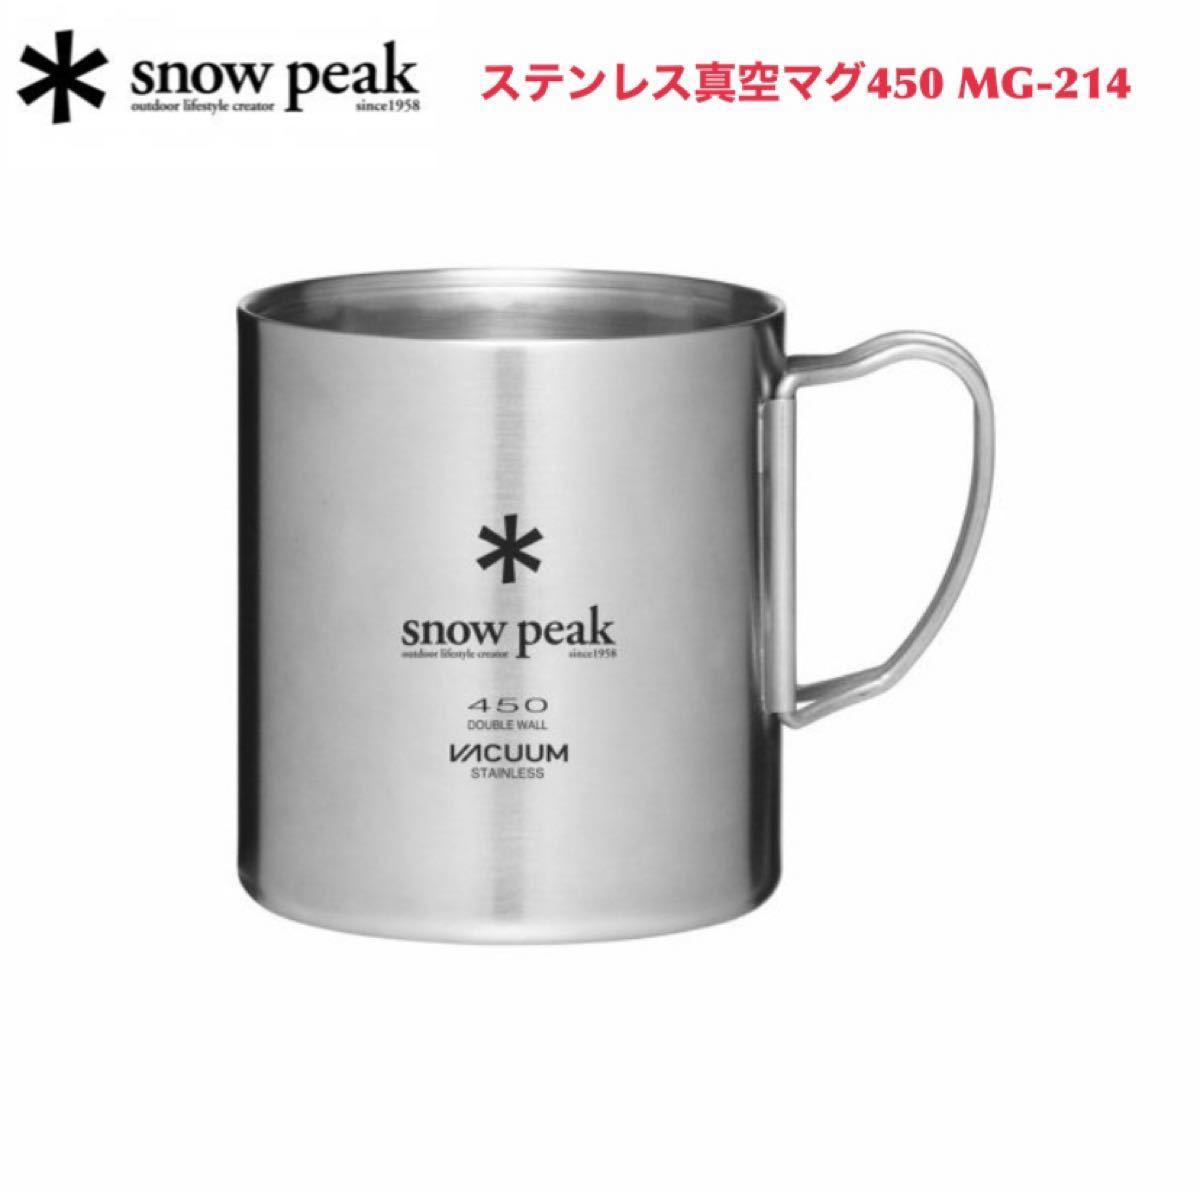 【値下げ中】スノーピーク ステンレス真空マグ450 MG-214 snow peak  マグカップ